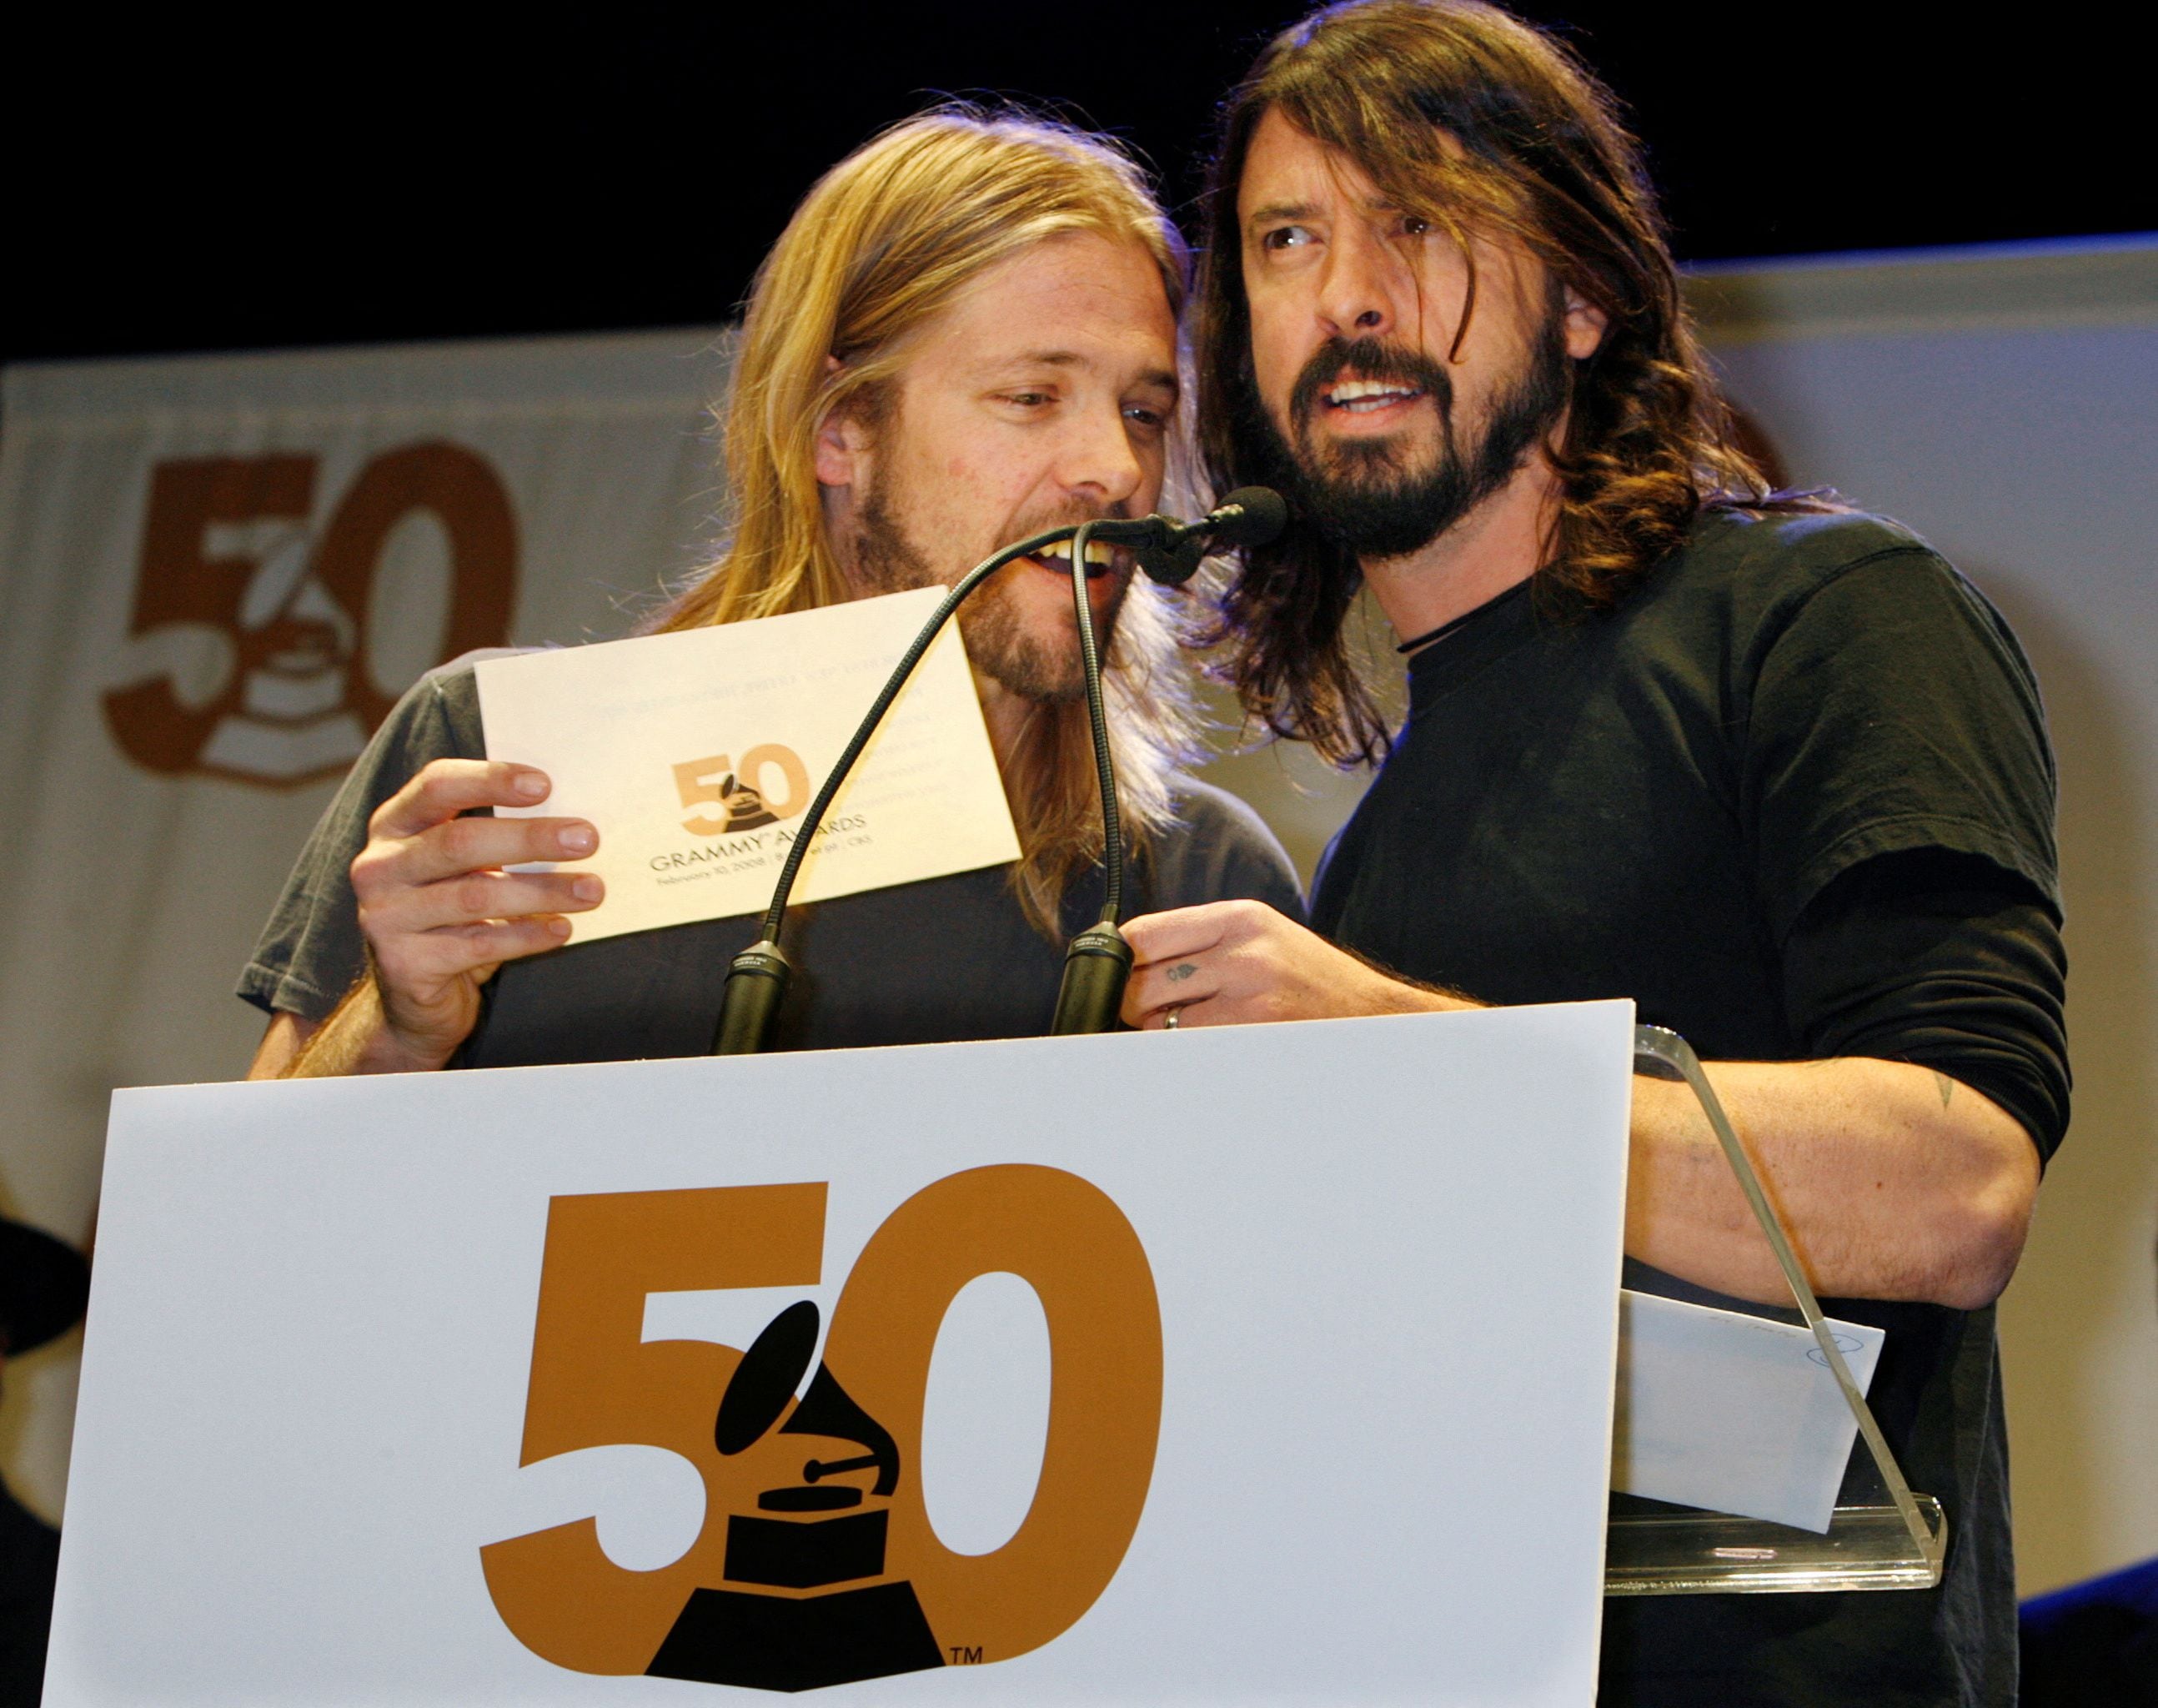 Foto de archivo. Taylor Hawkins y Dave Grohl de los Foo Fighters anuncian algunas de las nominaciones para la 50ª edición de los premios Grammy, en Hollywood, California, Estados Unidos, 6 de diciembre, 2007. REUTERS/Fred Prouser